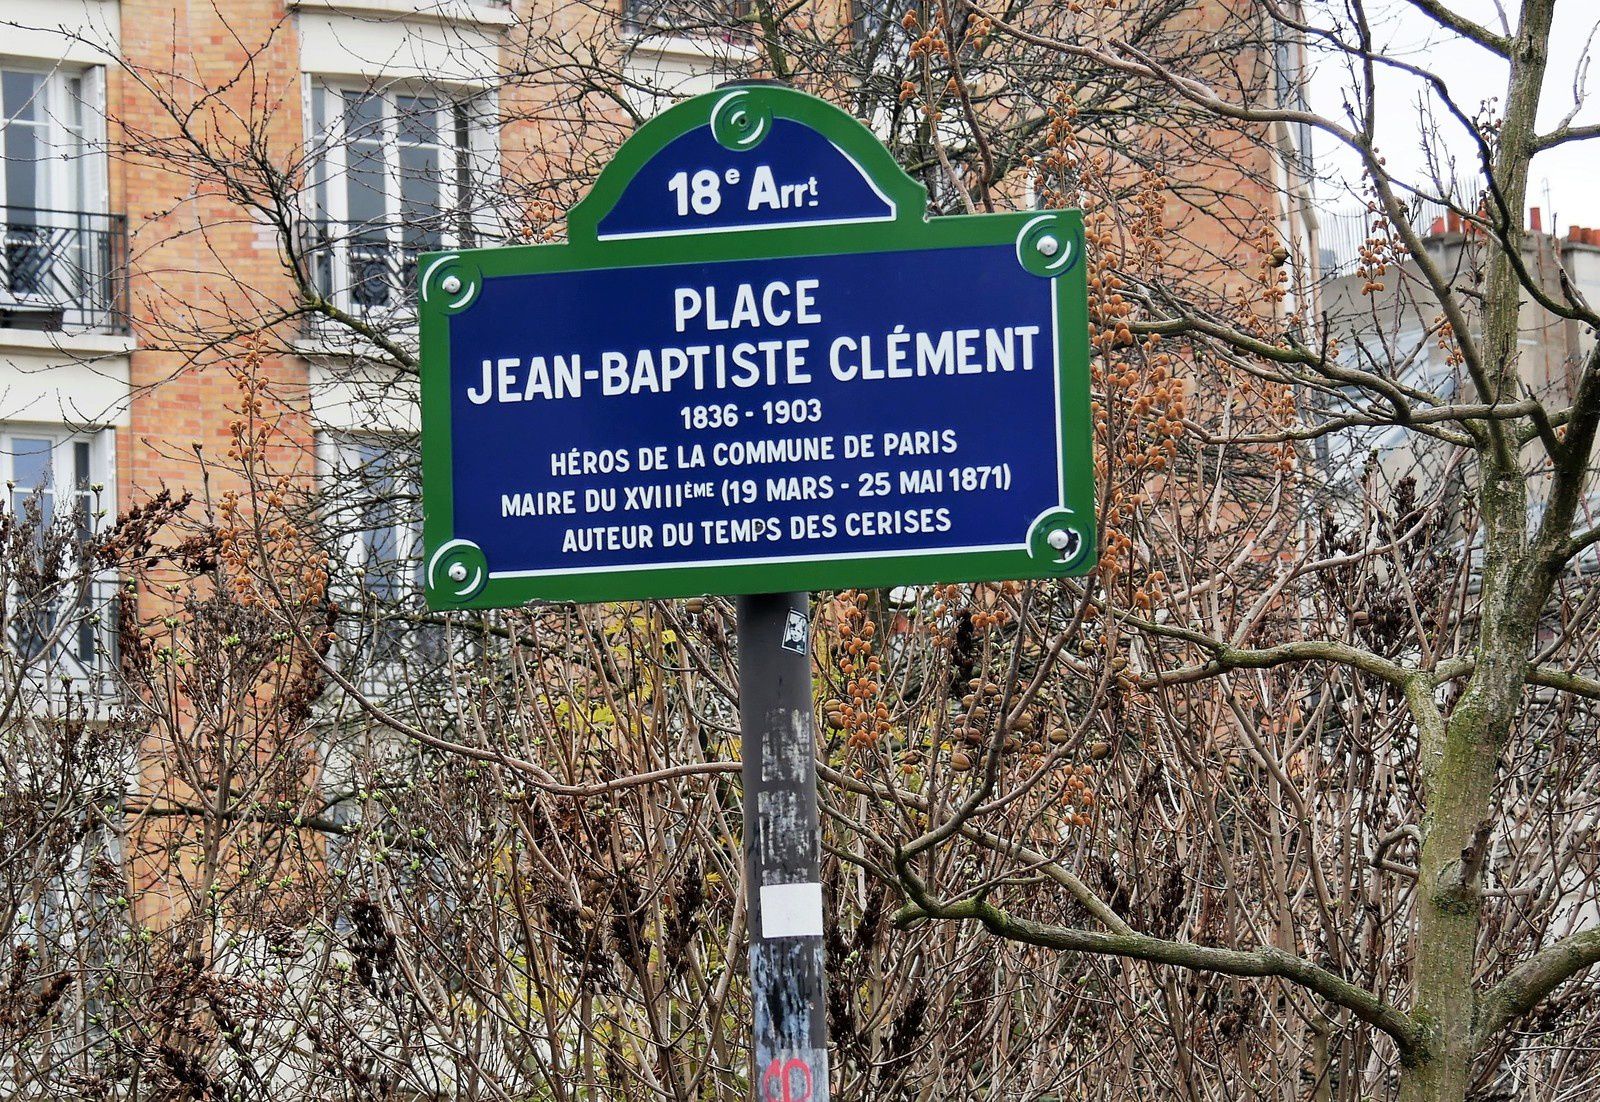 Mêmes erreurs sur la plaque! Il ne fut jamais maire de Montmartre! Il n'eut jamais de trait d'union!